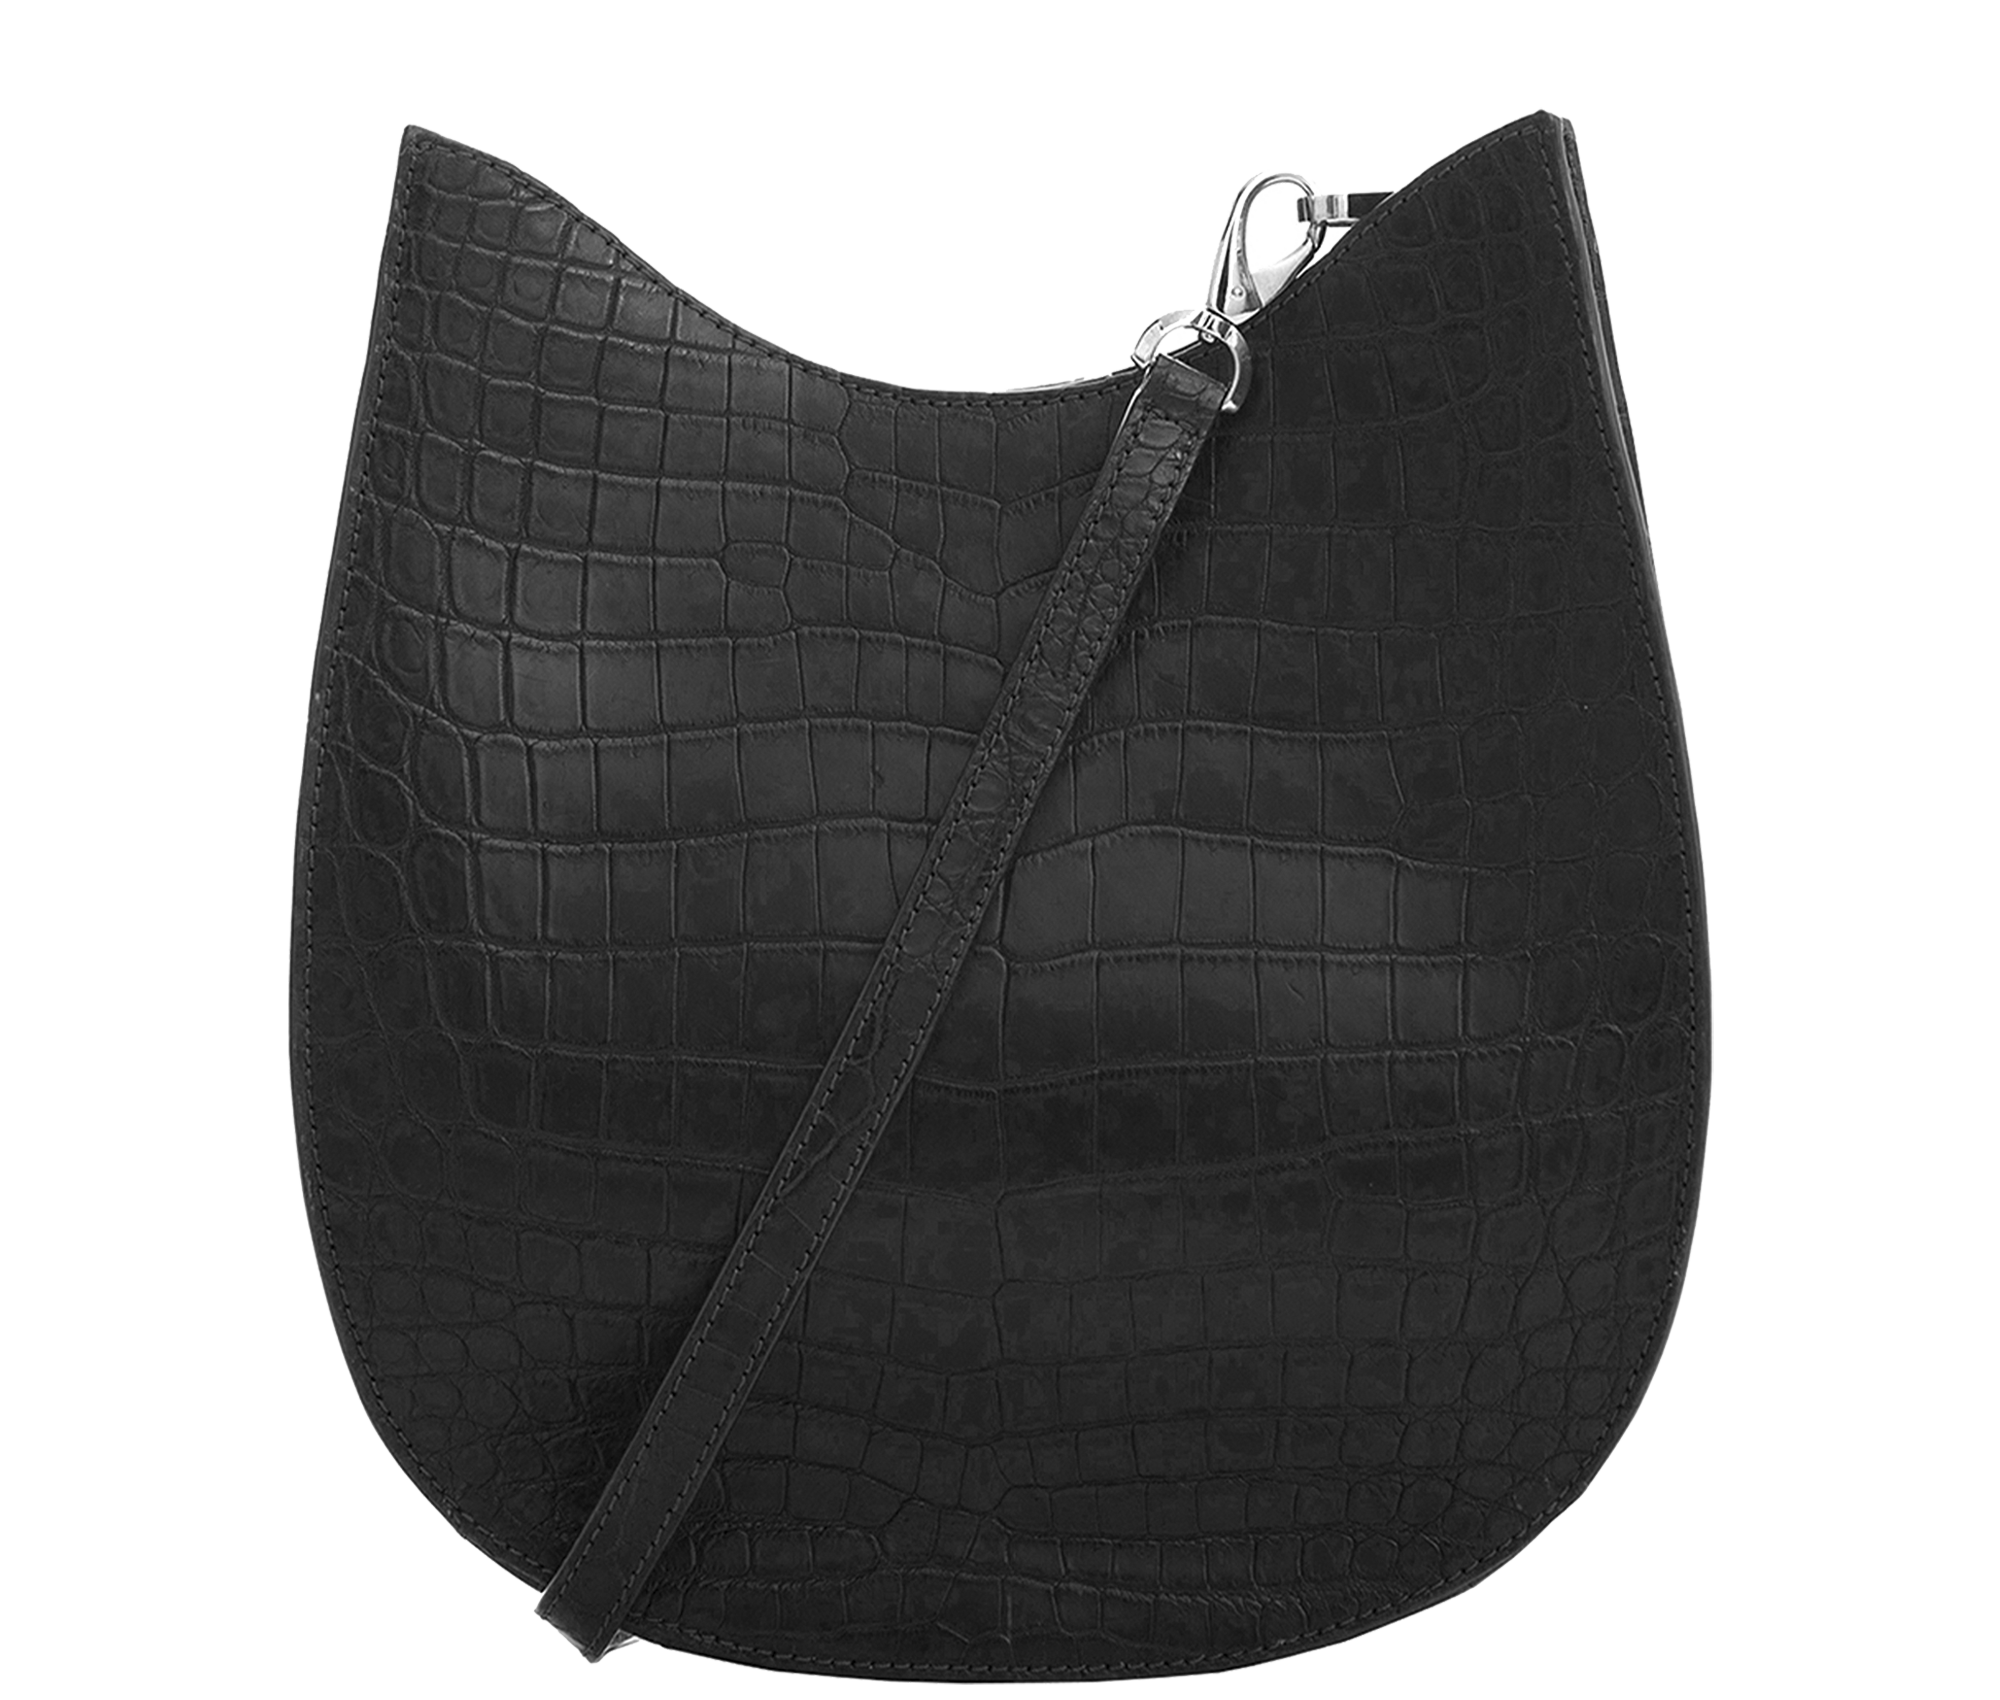 Handbag Saddle Bag